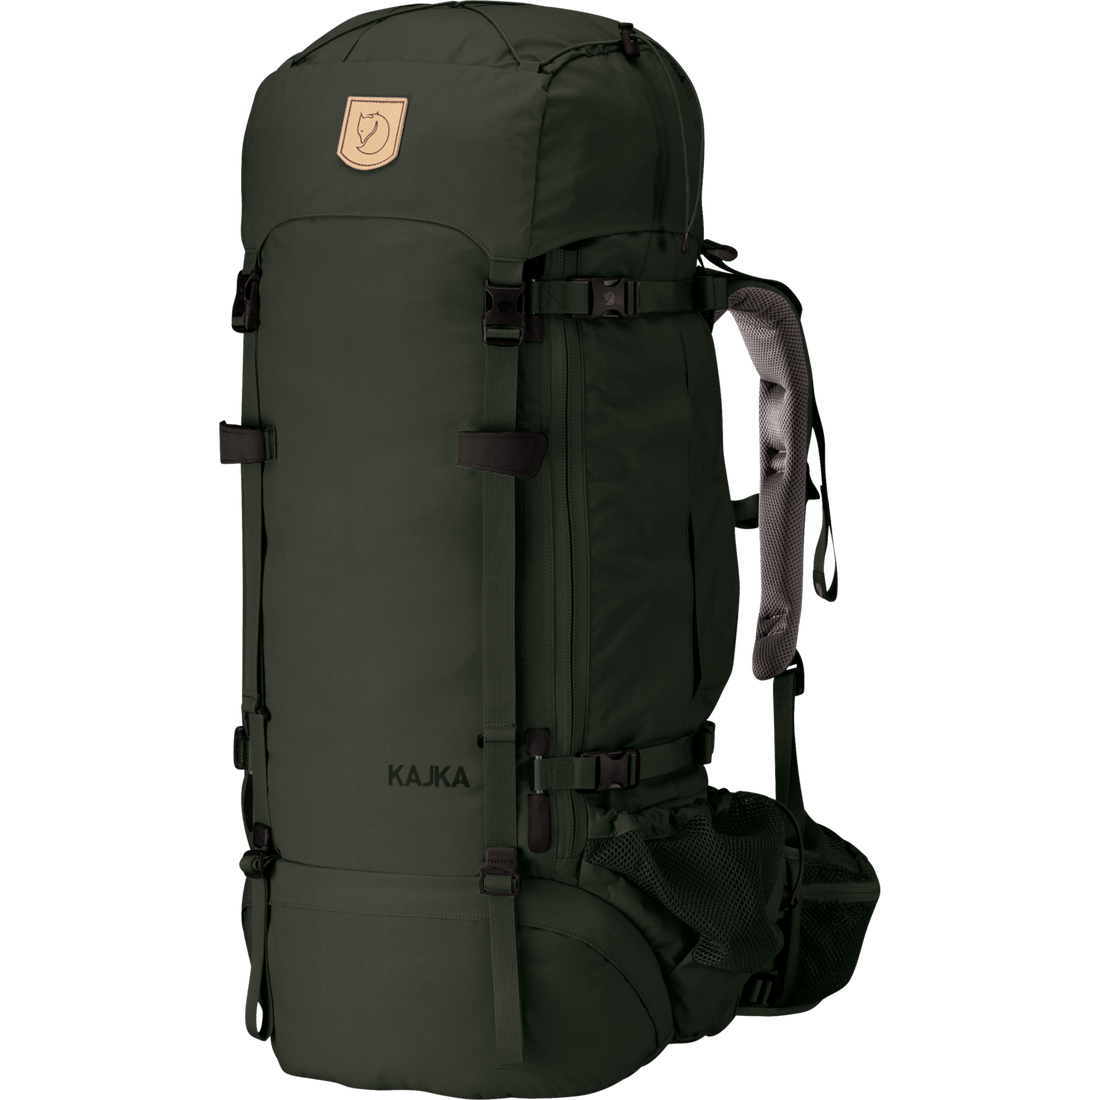 Kajka 75 Advanced Trekking Backpack - UN Blue | Fjällräven 